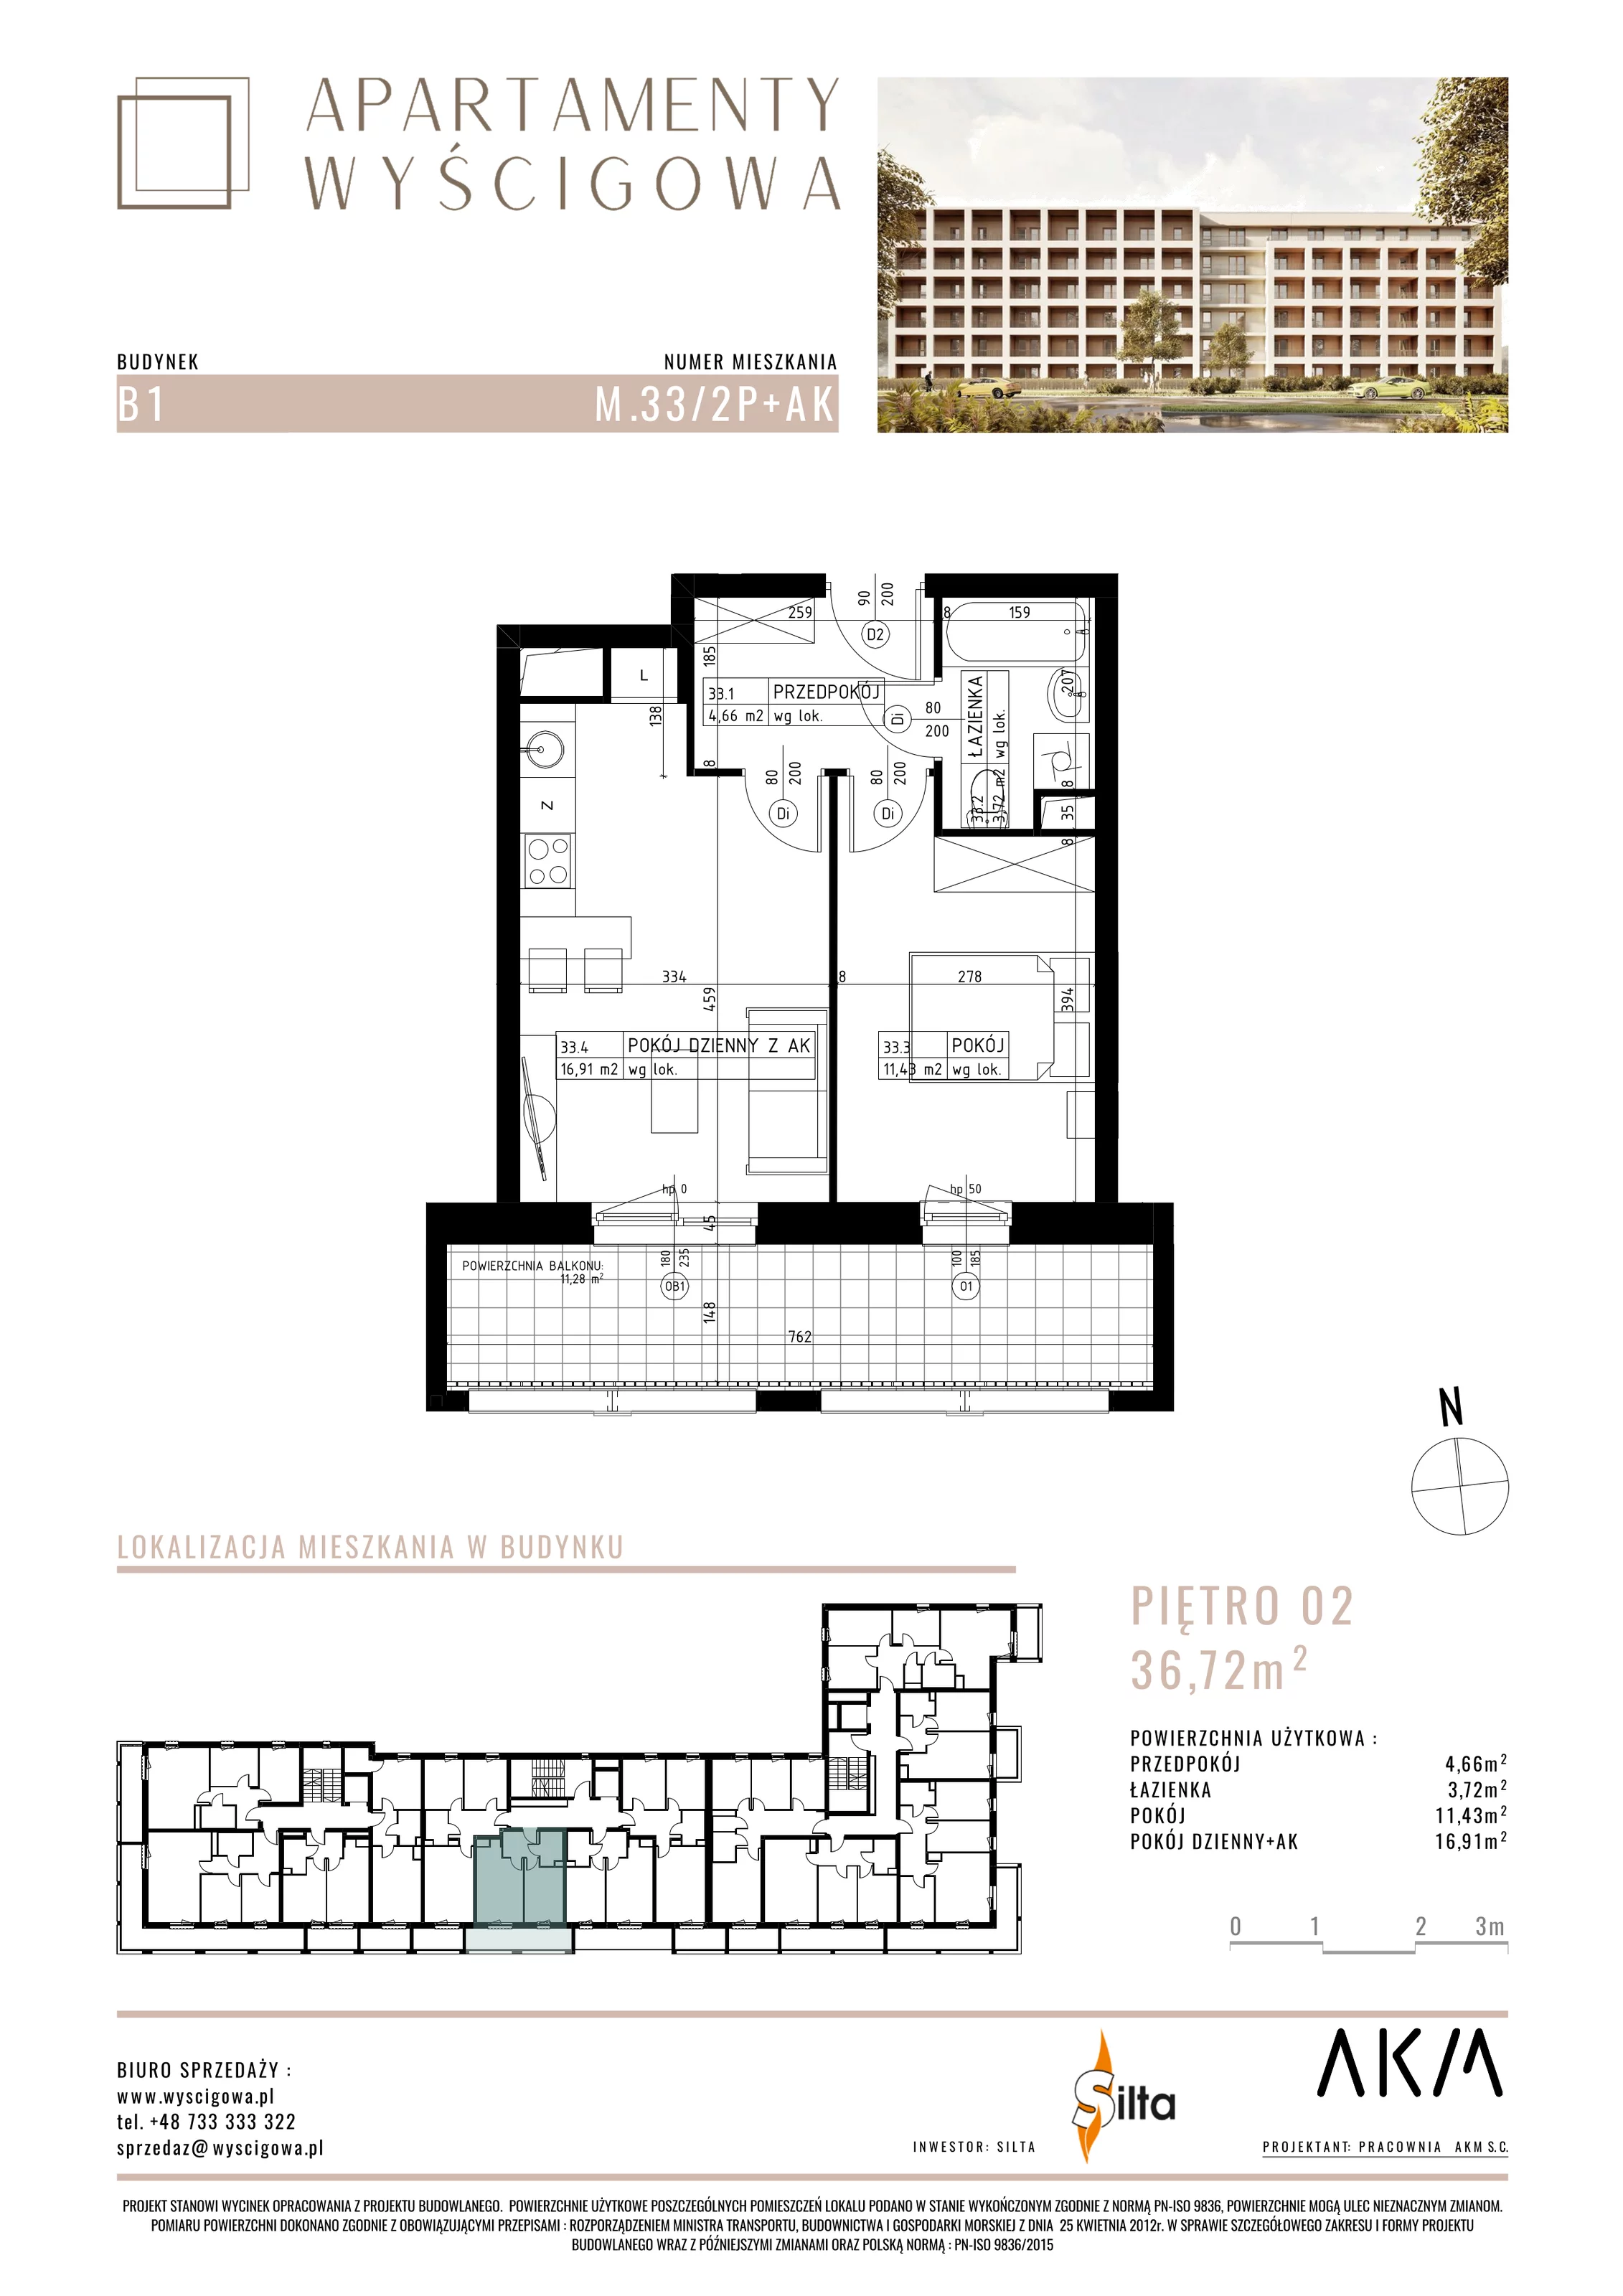 Mieszkanie 36,72 m², piętro 2, oferta nr B1.M33, Apartamenty Wyścigowa, Lublin, Dziesiąta, Dziesiąta, ul. Wyścigowa